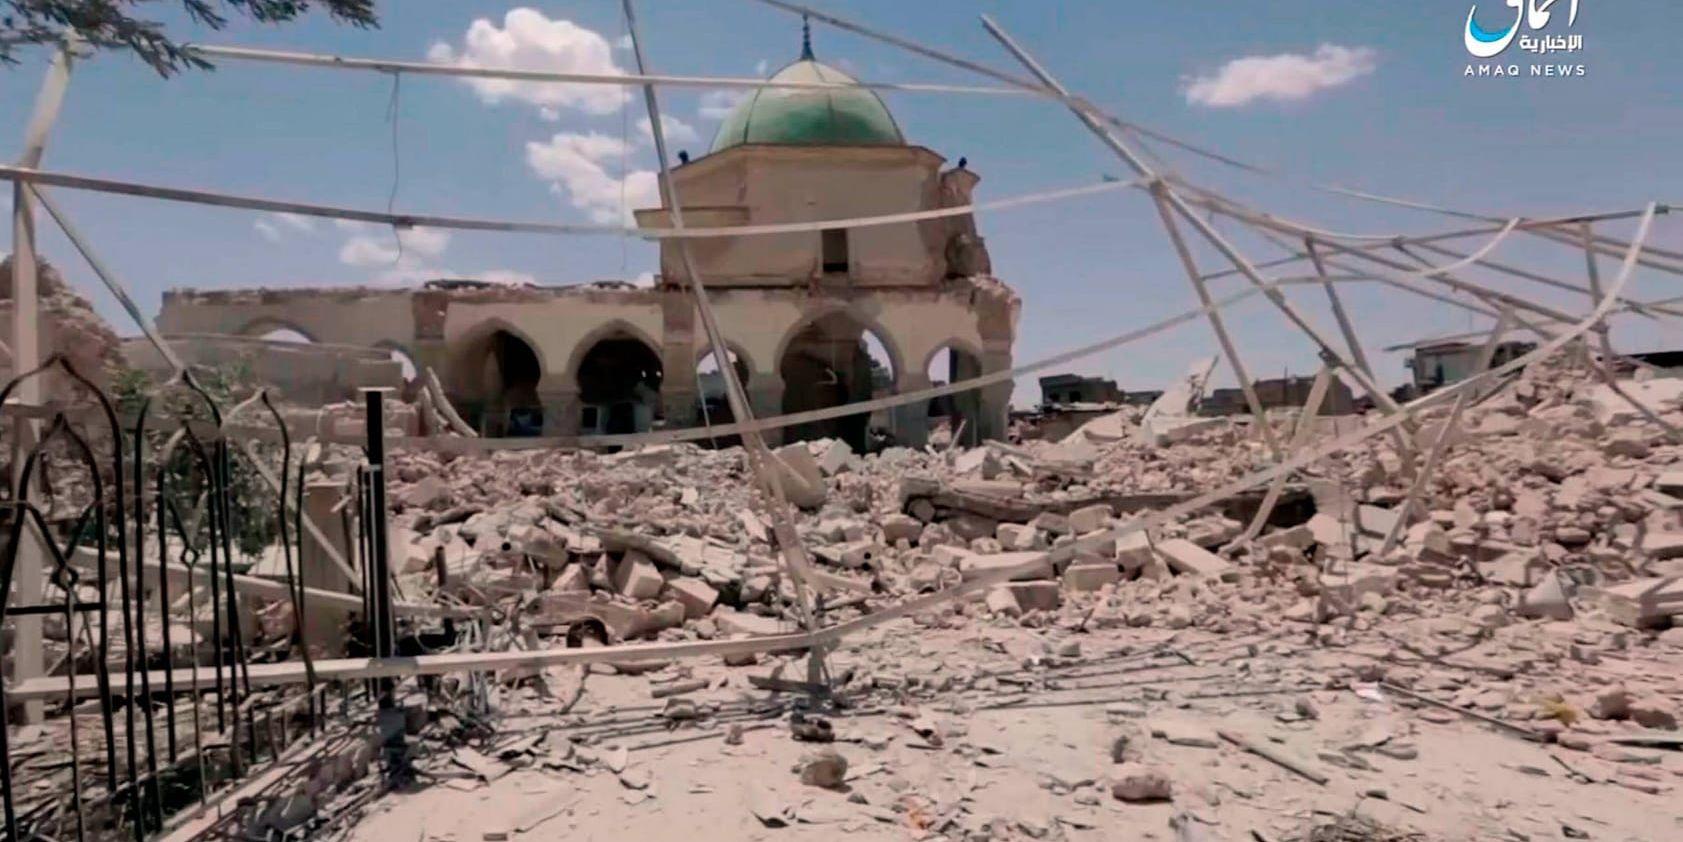 Ödeläggelsen där den berömda al-Nurimoskén låg innan IS sprängde den. Här utropade terrorrörelsen sitt så kallade kalifat 2014. Bilderna av förstörelsen spreds först via IS:s propagandaorgan Amaq.